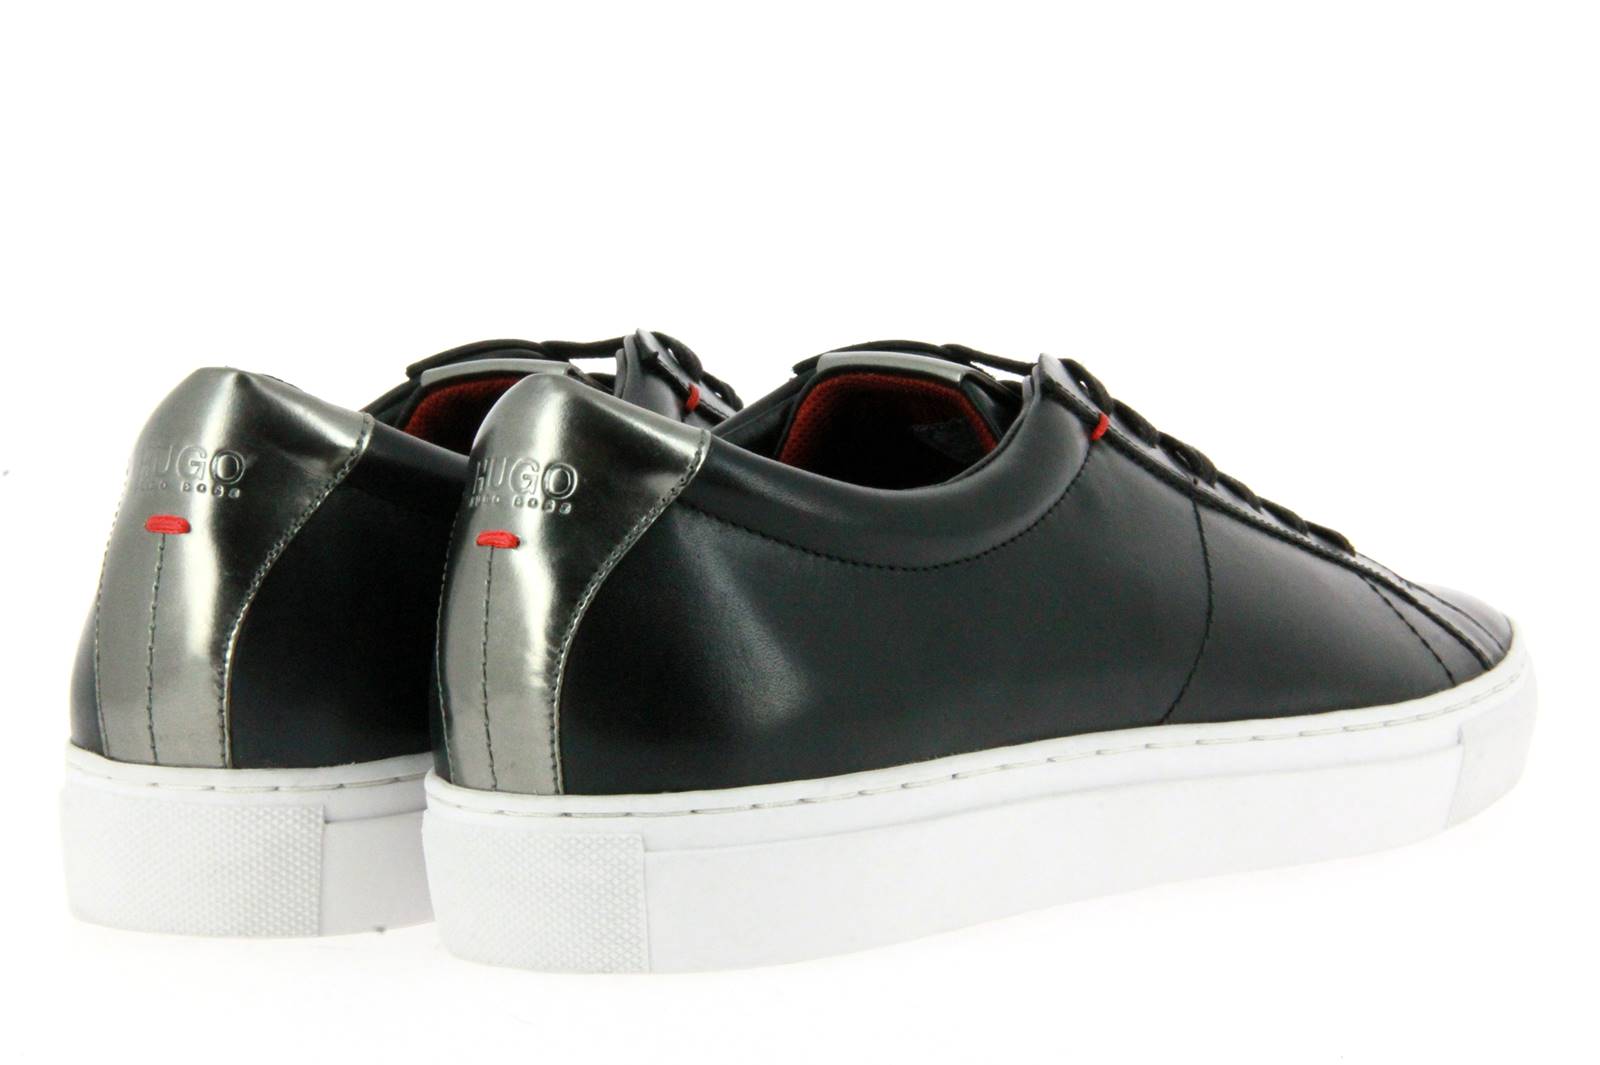 Hugo Boss Sneaker FUCONT BLACK (40)